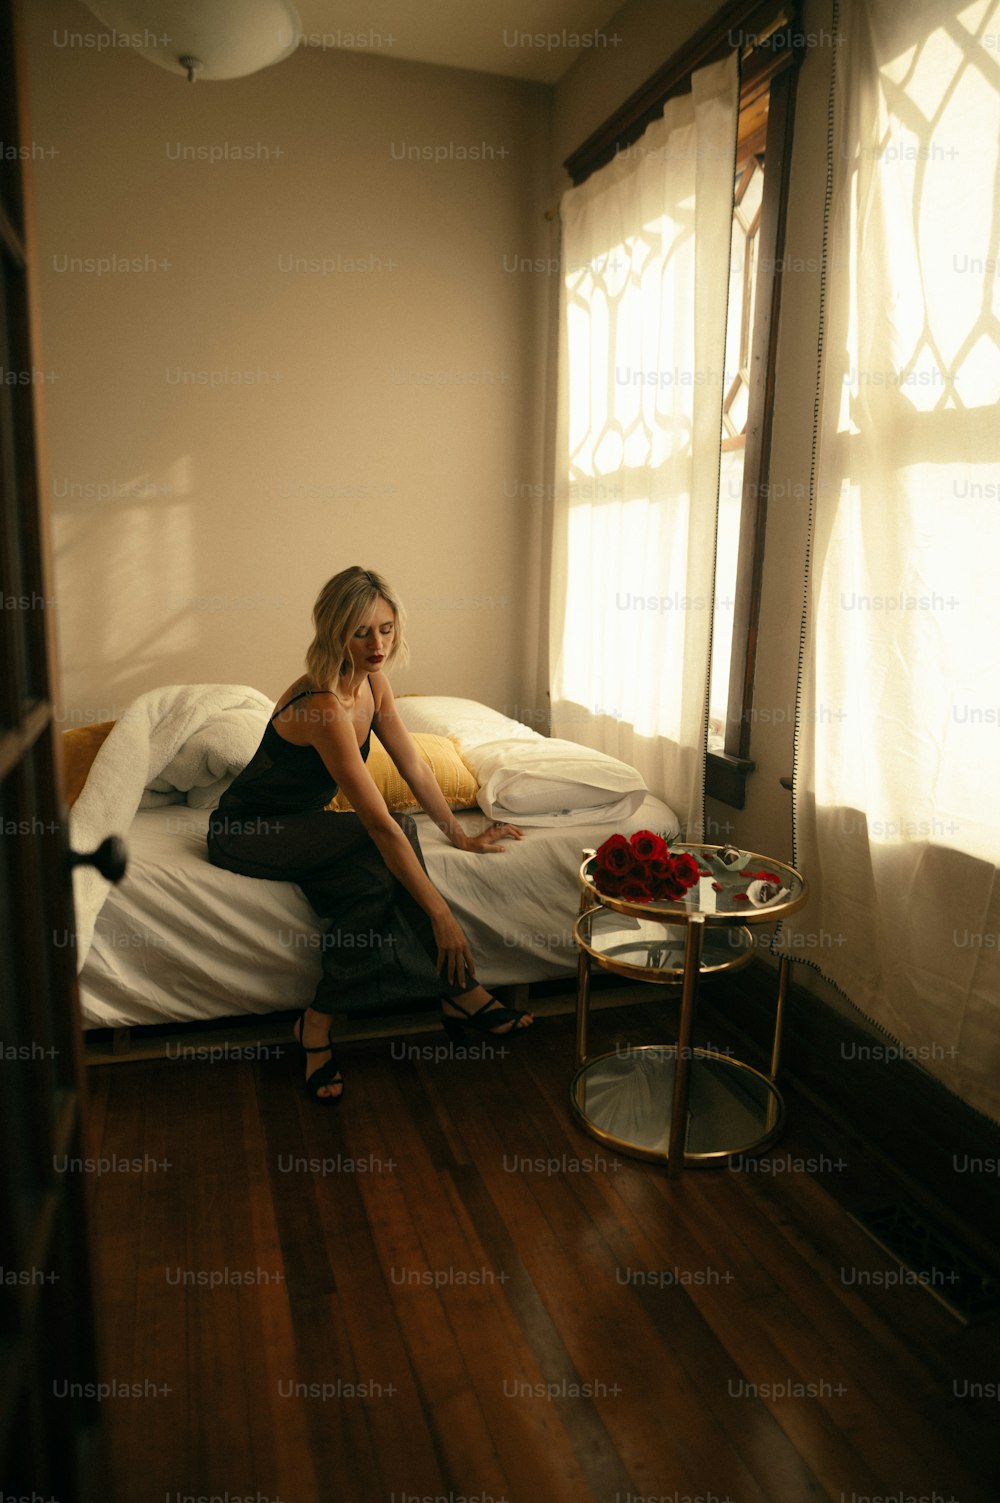 Una mujer sentada en una cama hablando por teléfono celular